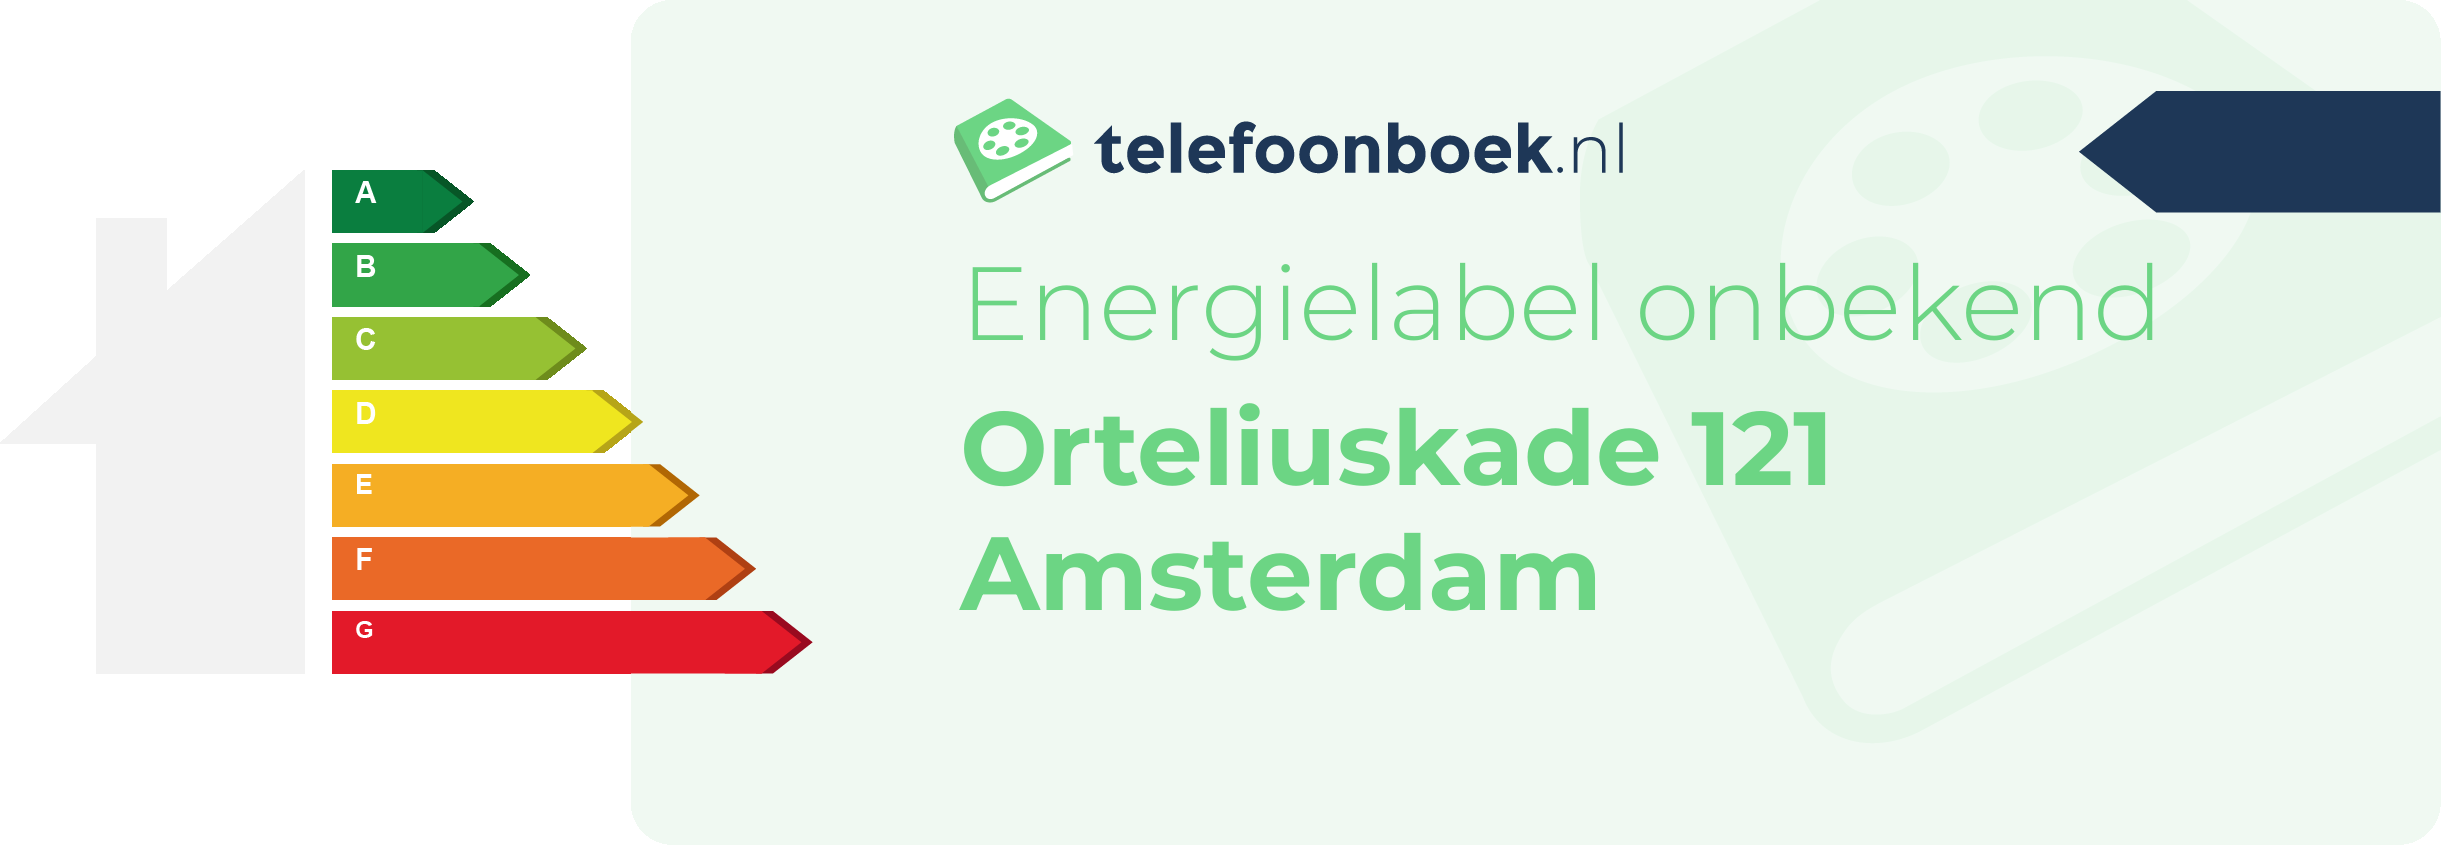 Energielabel Orteliuskade 121 Amsterdam